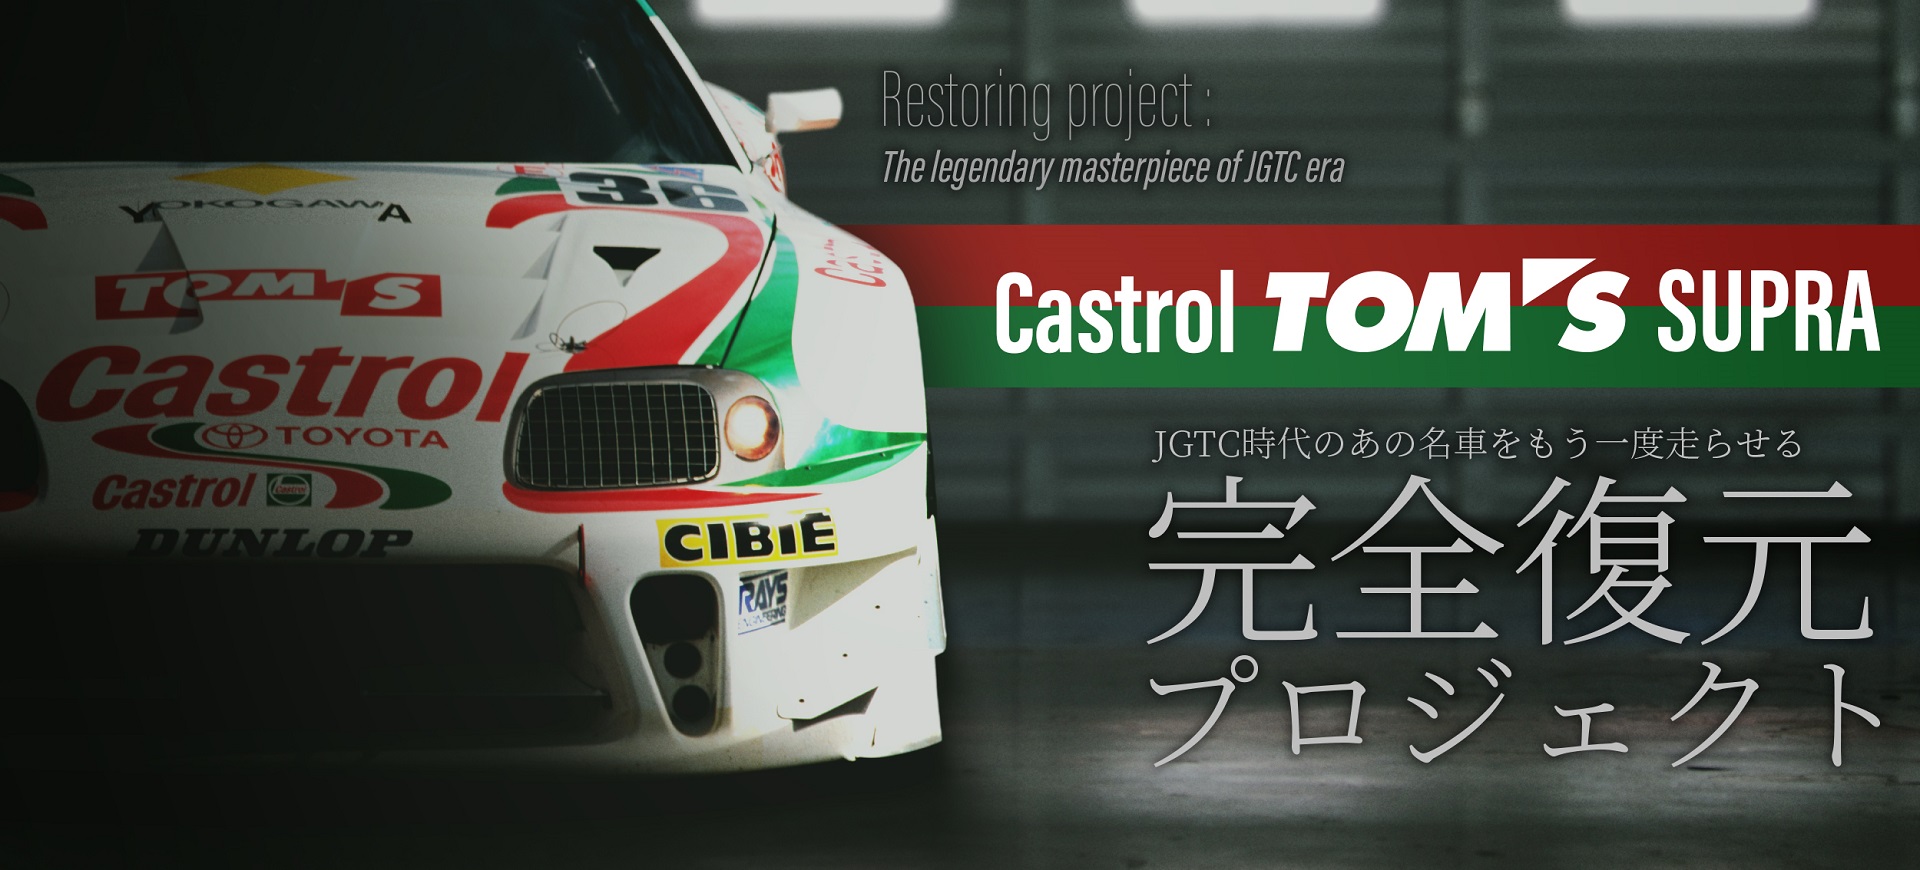 トムス、伝説のレーシングカーを蘇らせる「Castrol TOM'S Supra レストアプロジェクト2020」 - Car Watch